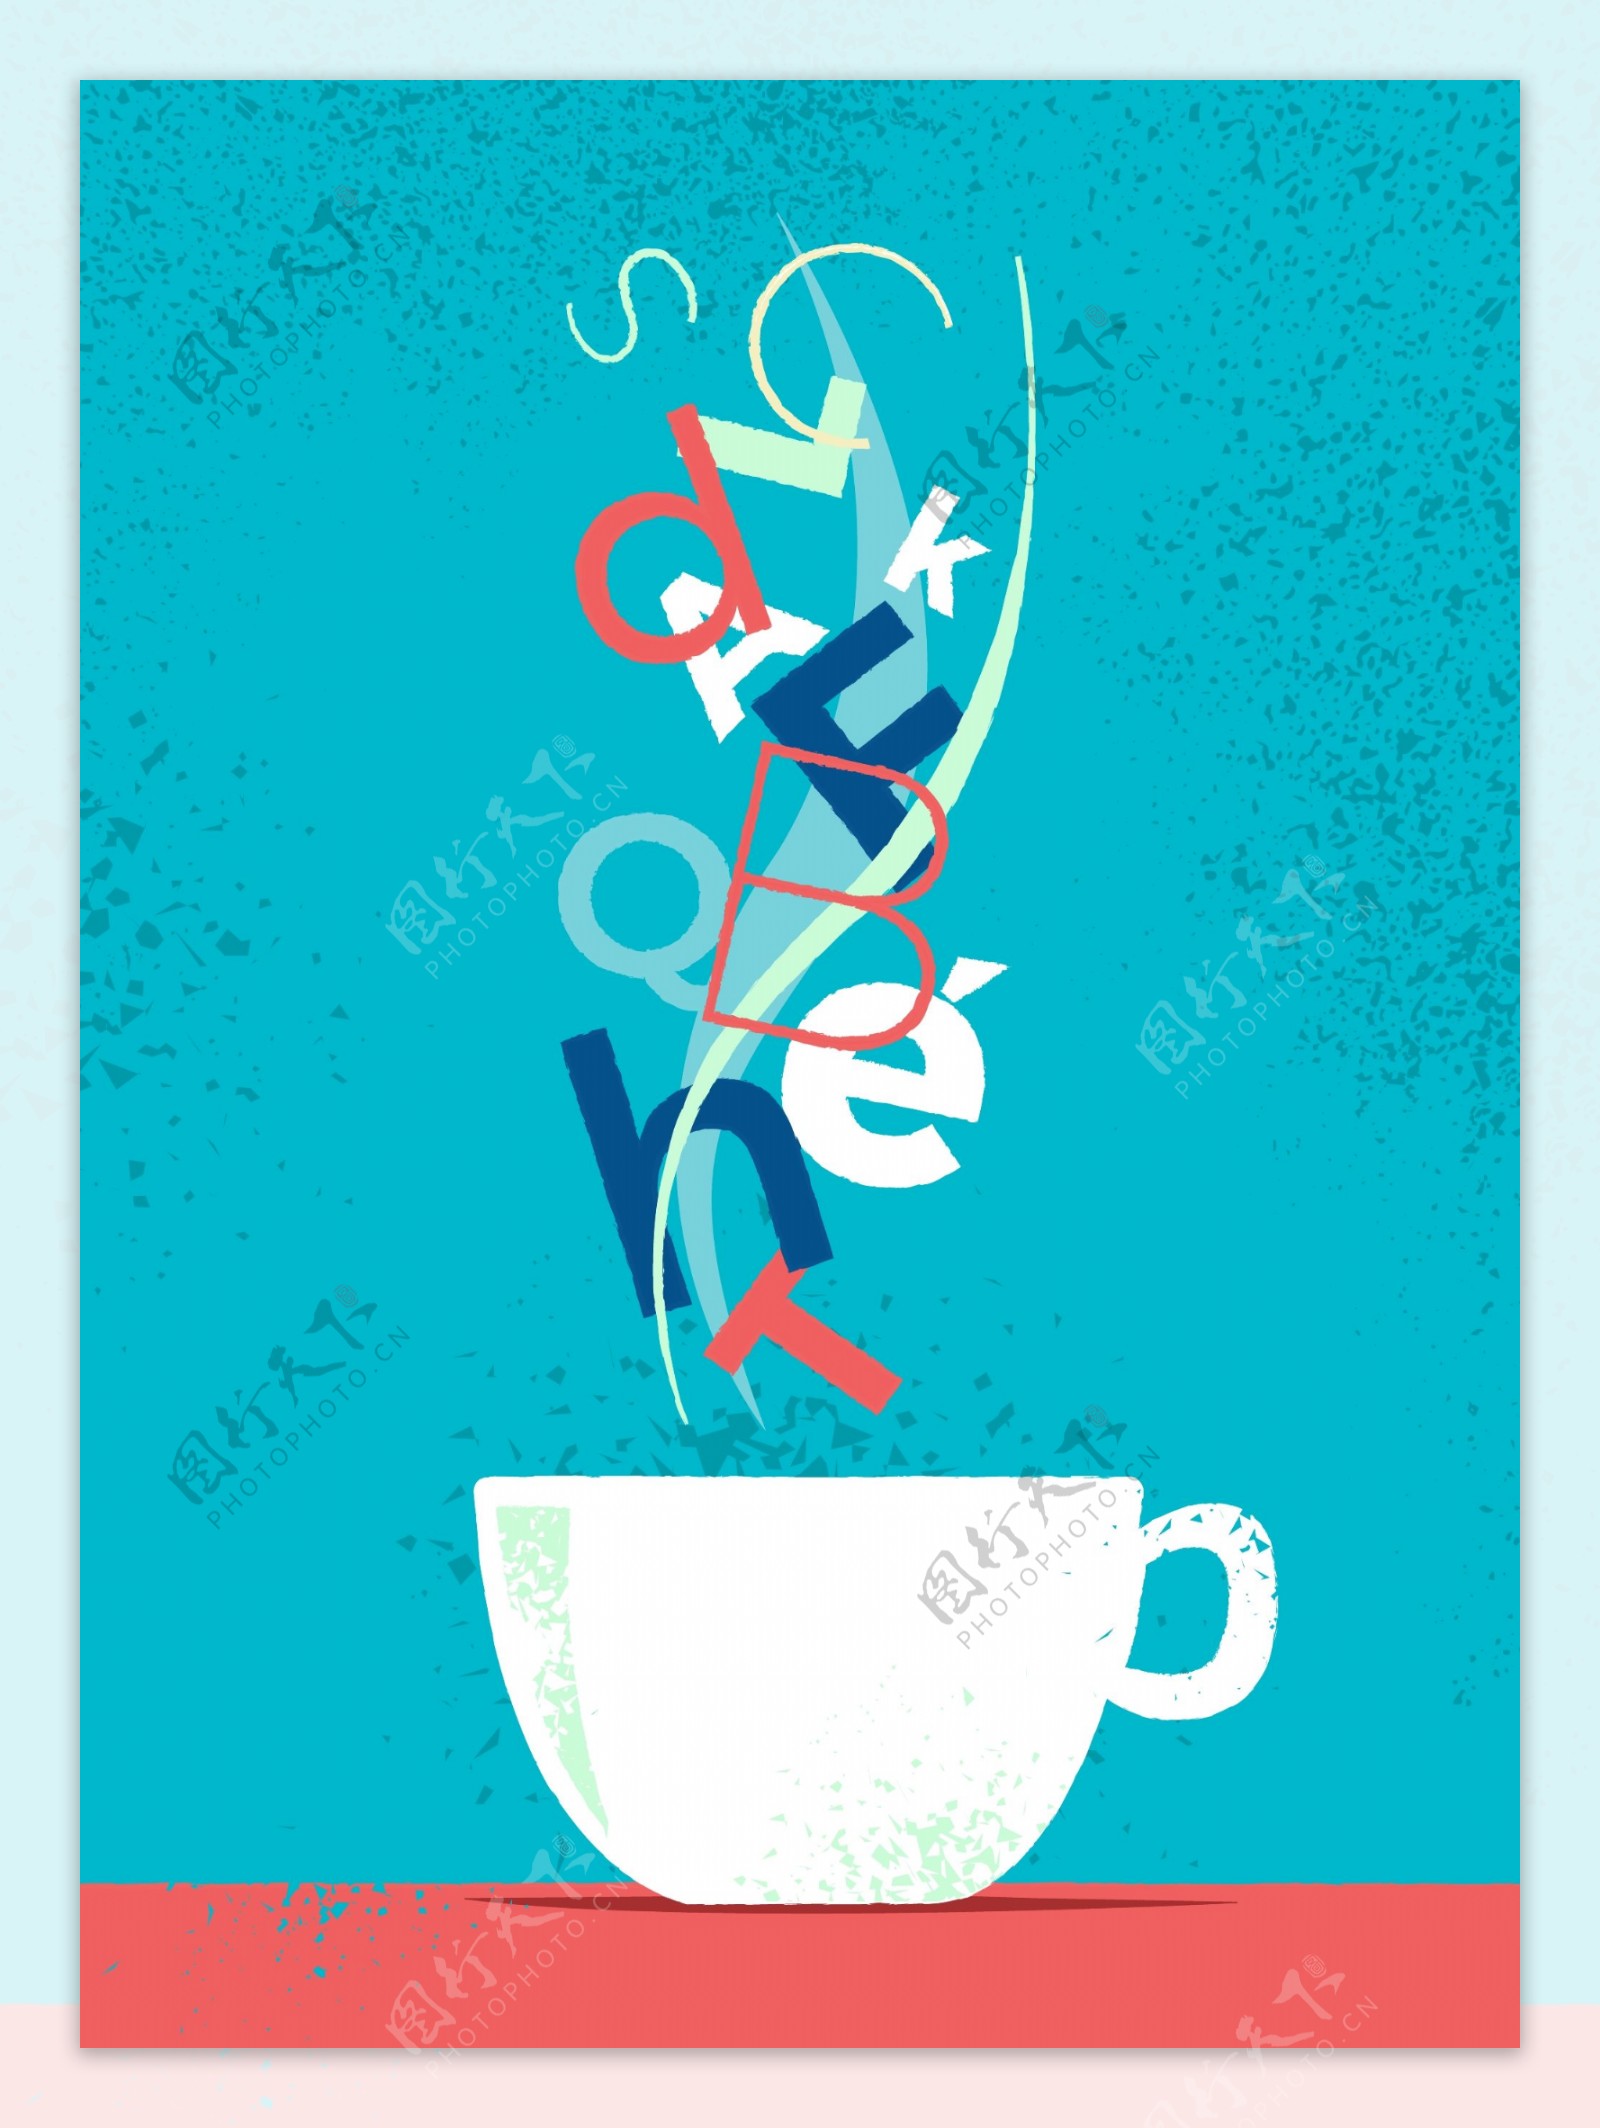 手绘咖啡杯与字母装饰插图蓝色背景